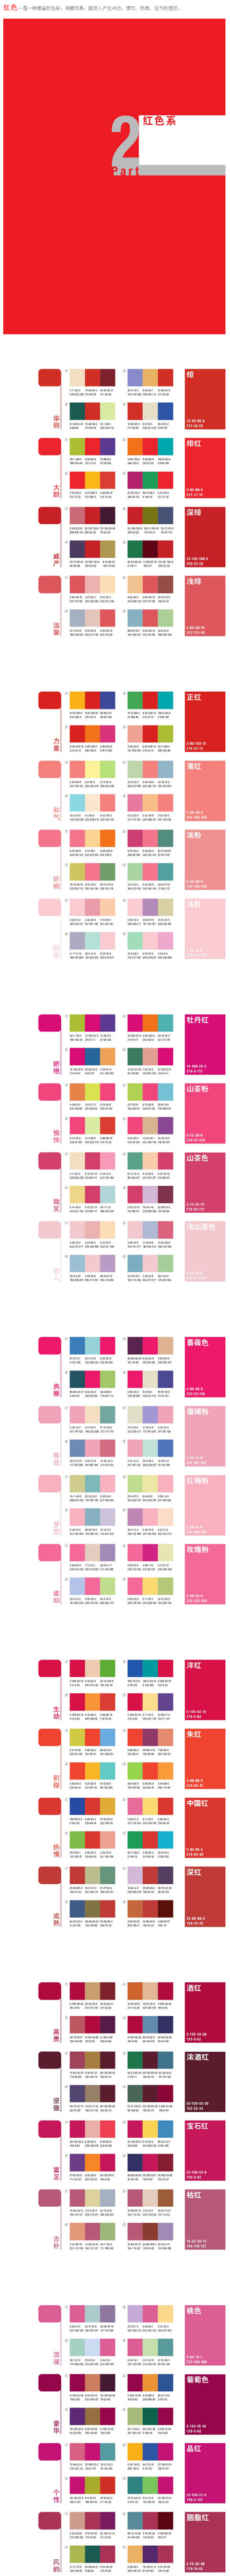 7种色彩设计方案1